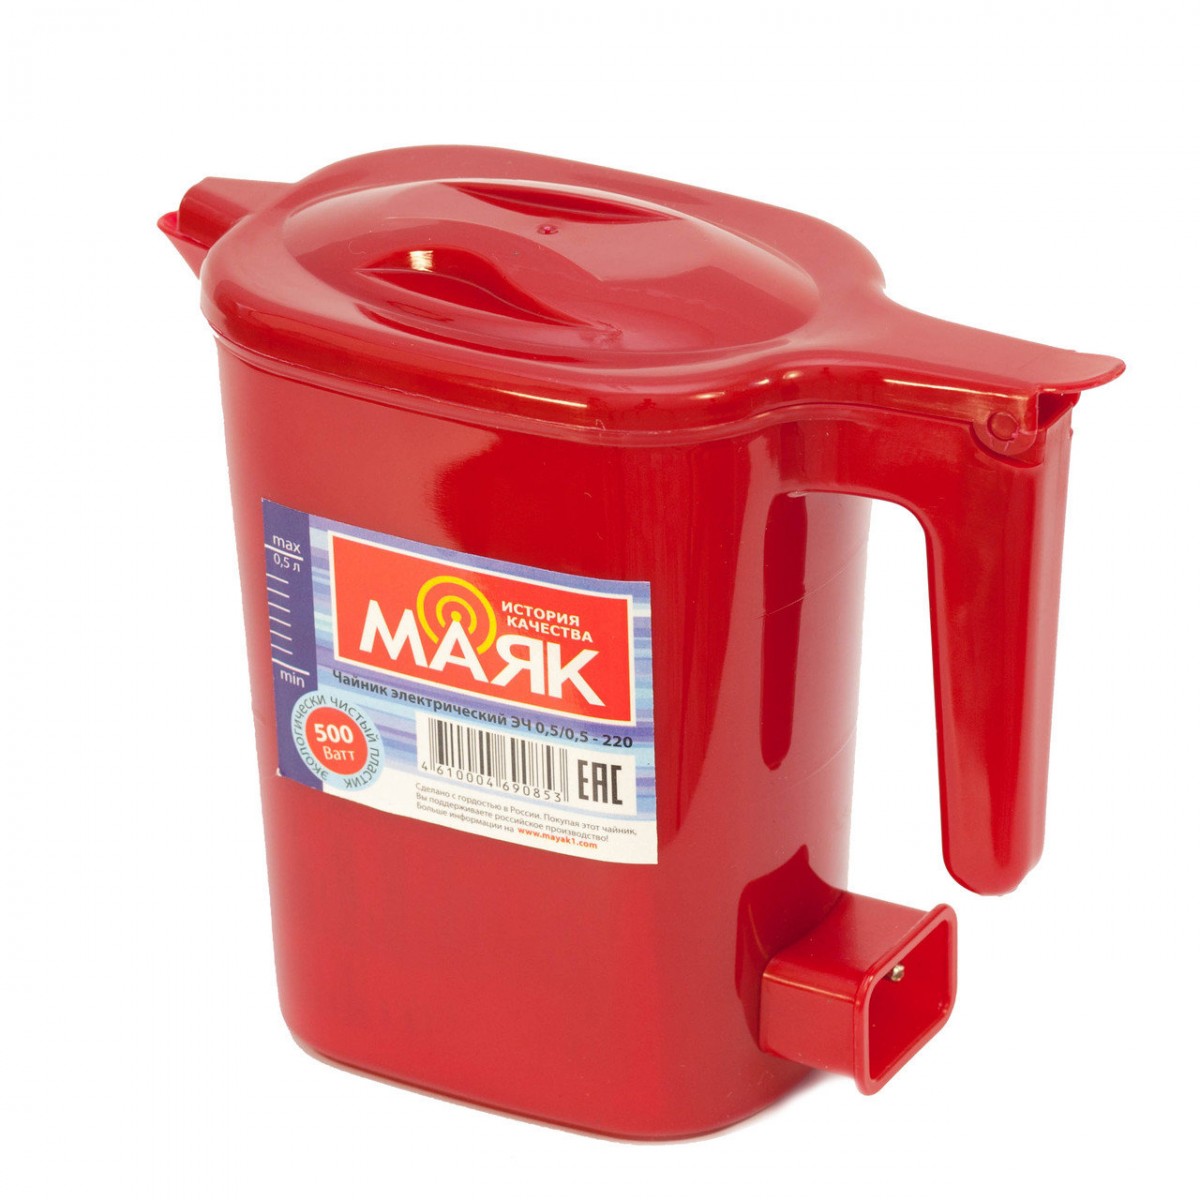 Чайник Маяк ЭЧ 0,5/0,5-220  (0,5л, 0,5кВт) цвет рубин